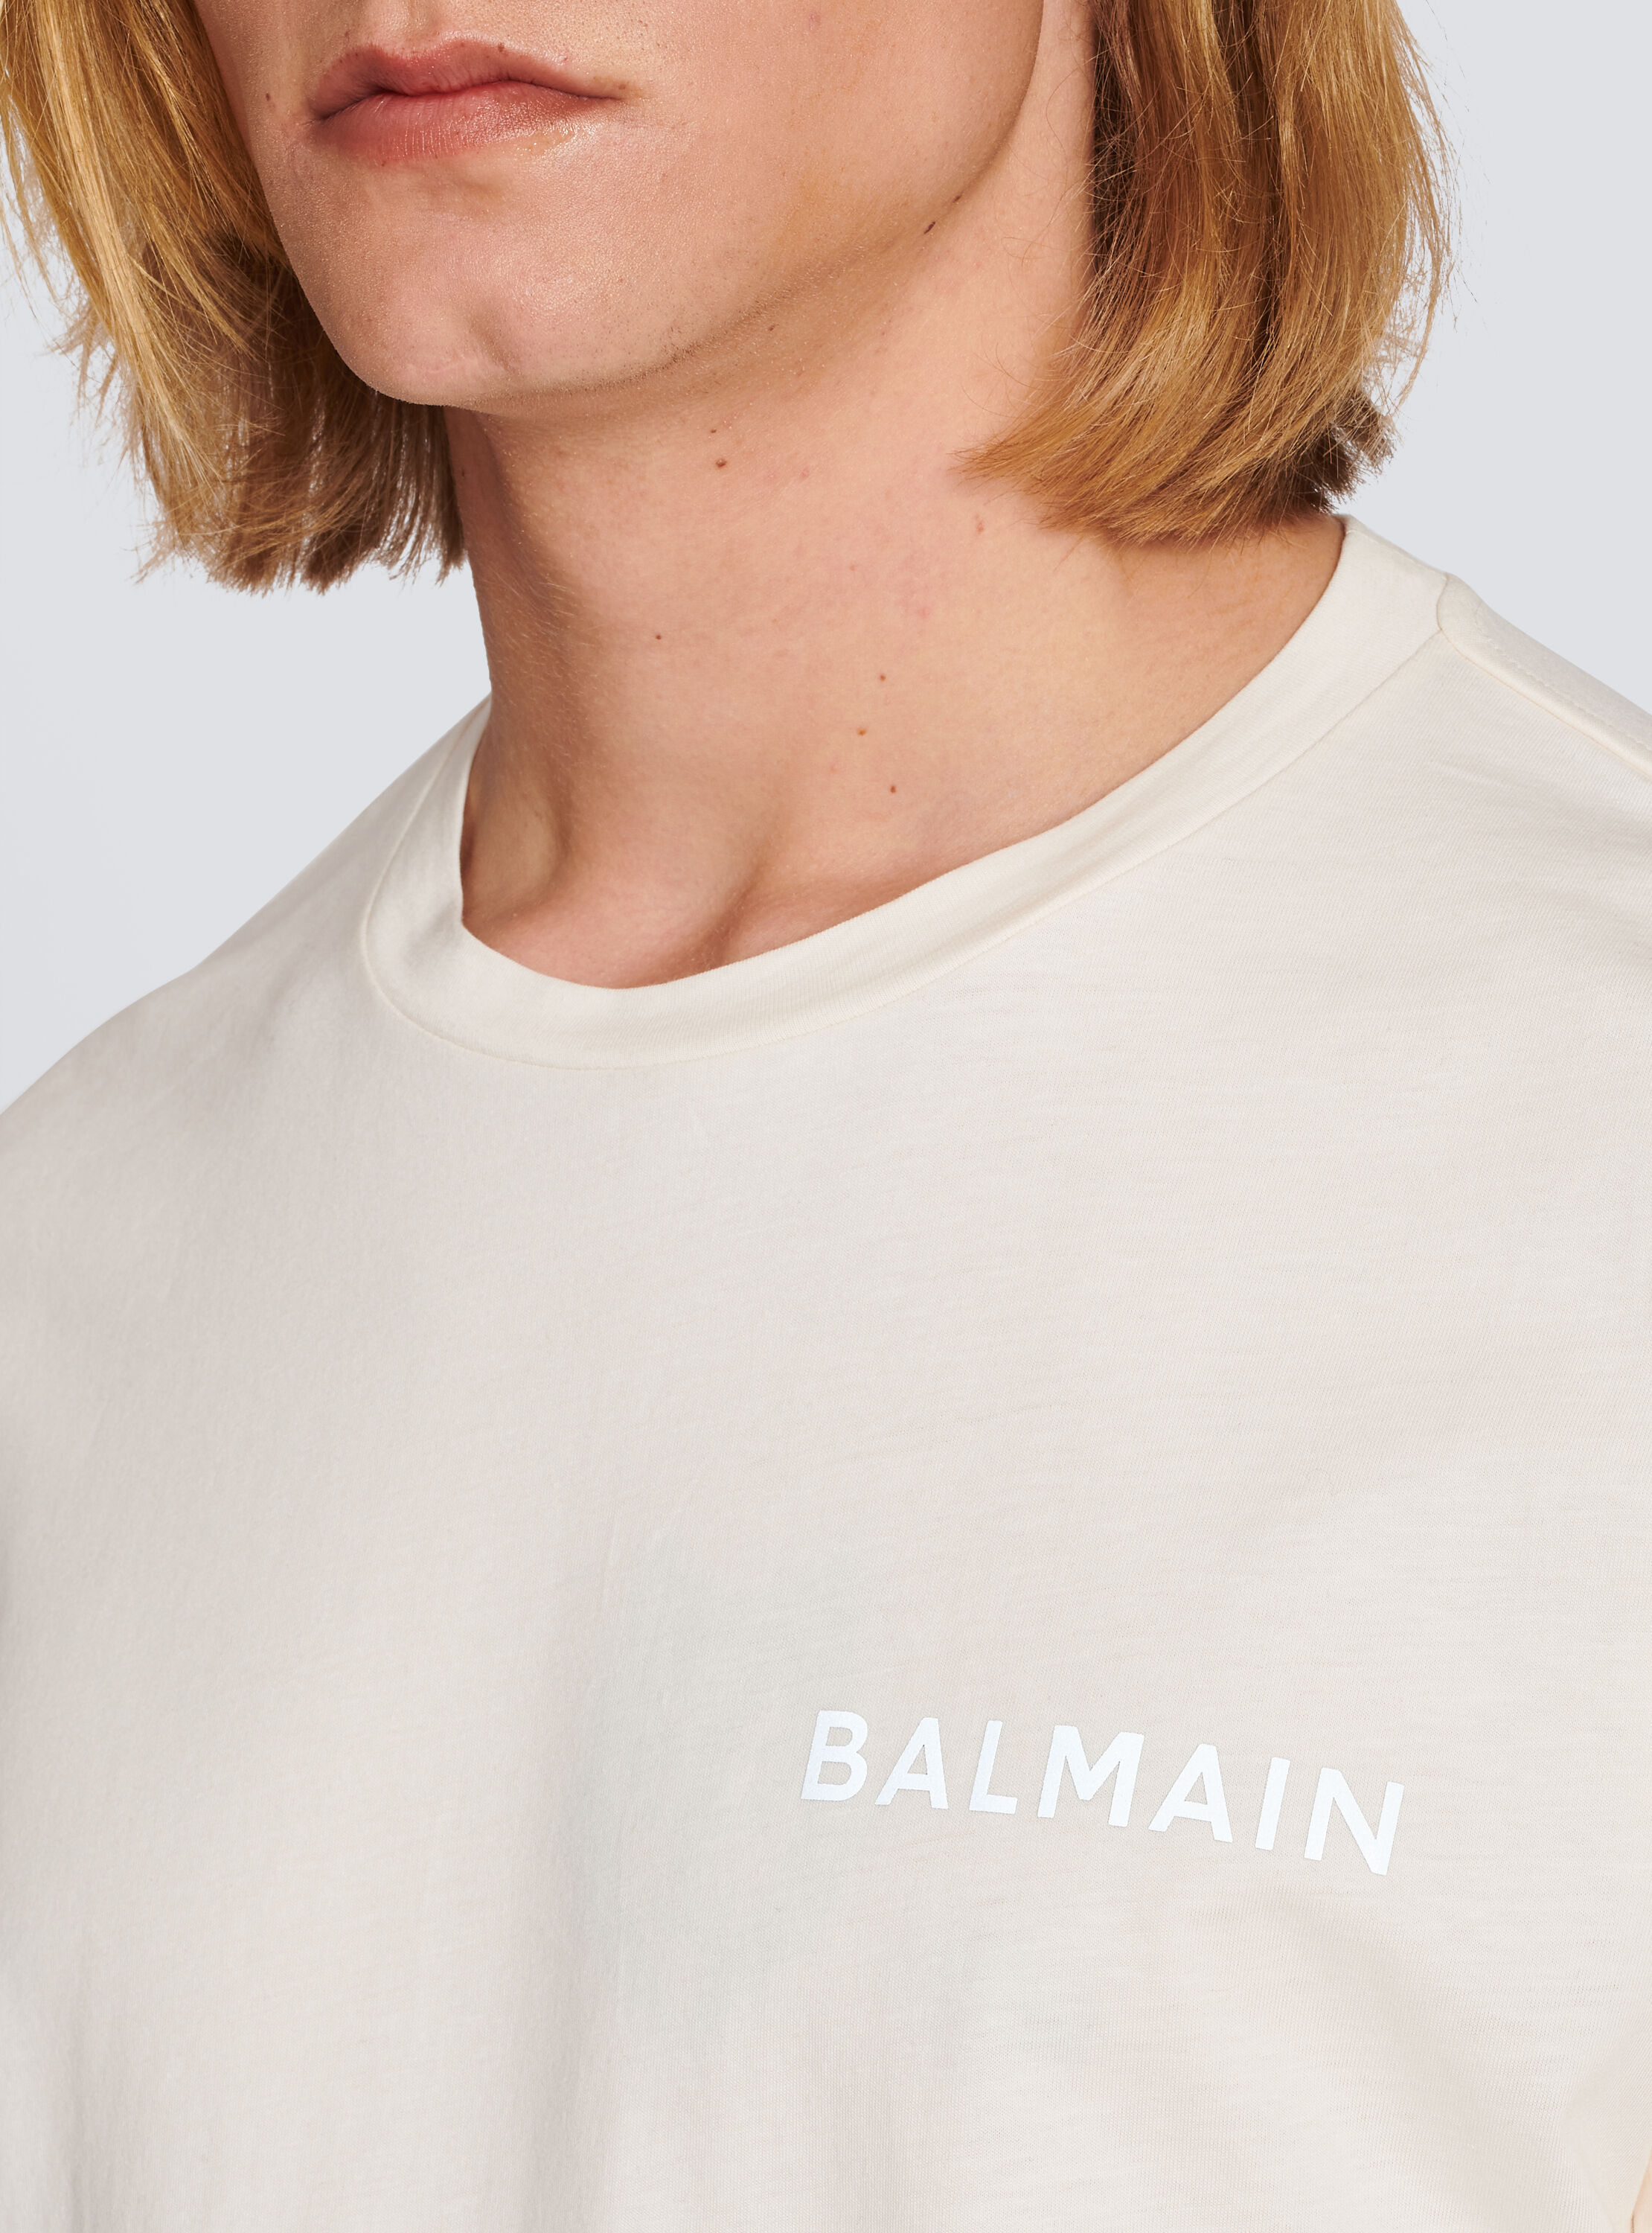 Balmain Cotton Written T-shirt in White for Men Mens T-shirts Balmain T-shirts Save 55% 